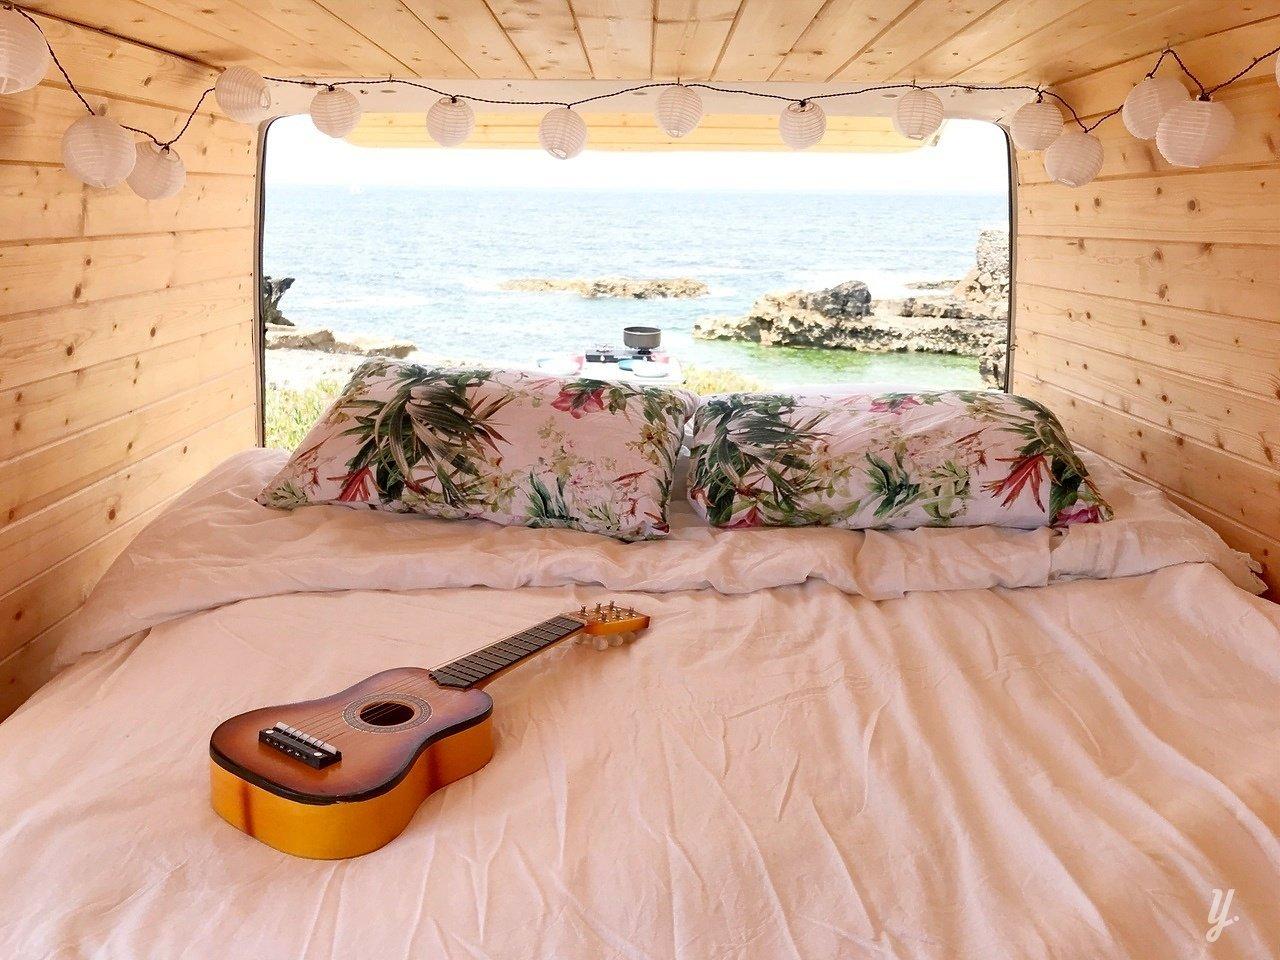 guitar on camper van with view of ocean